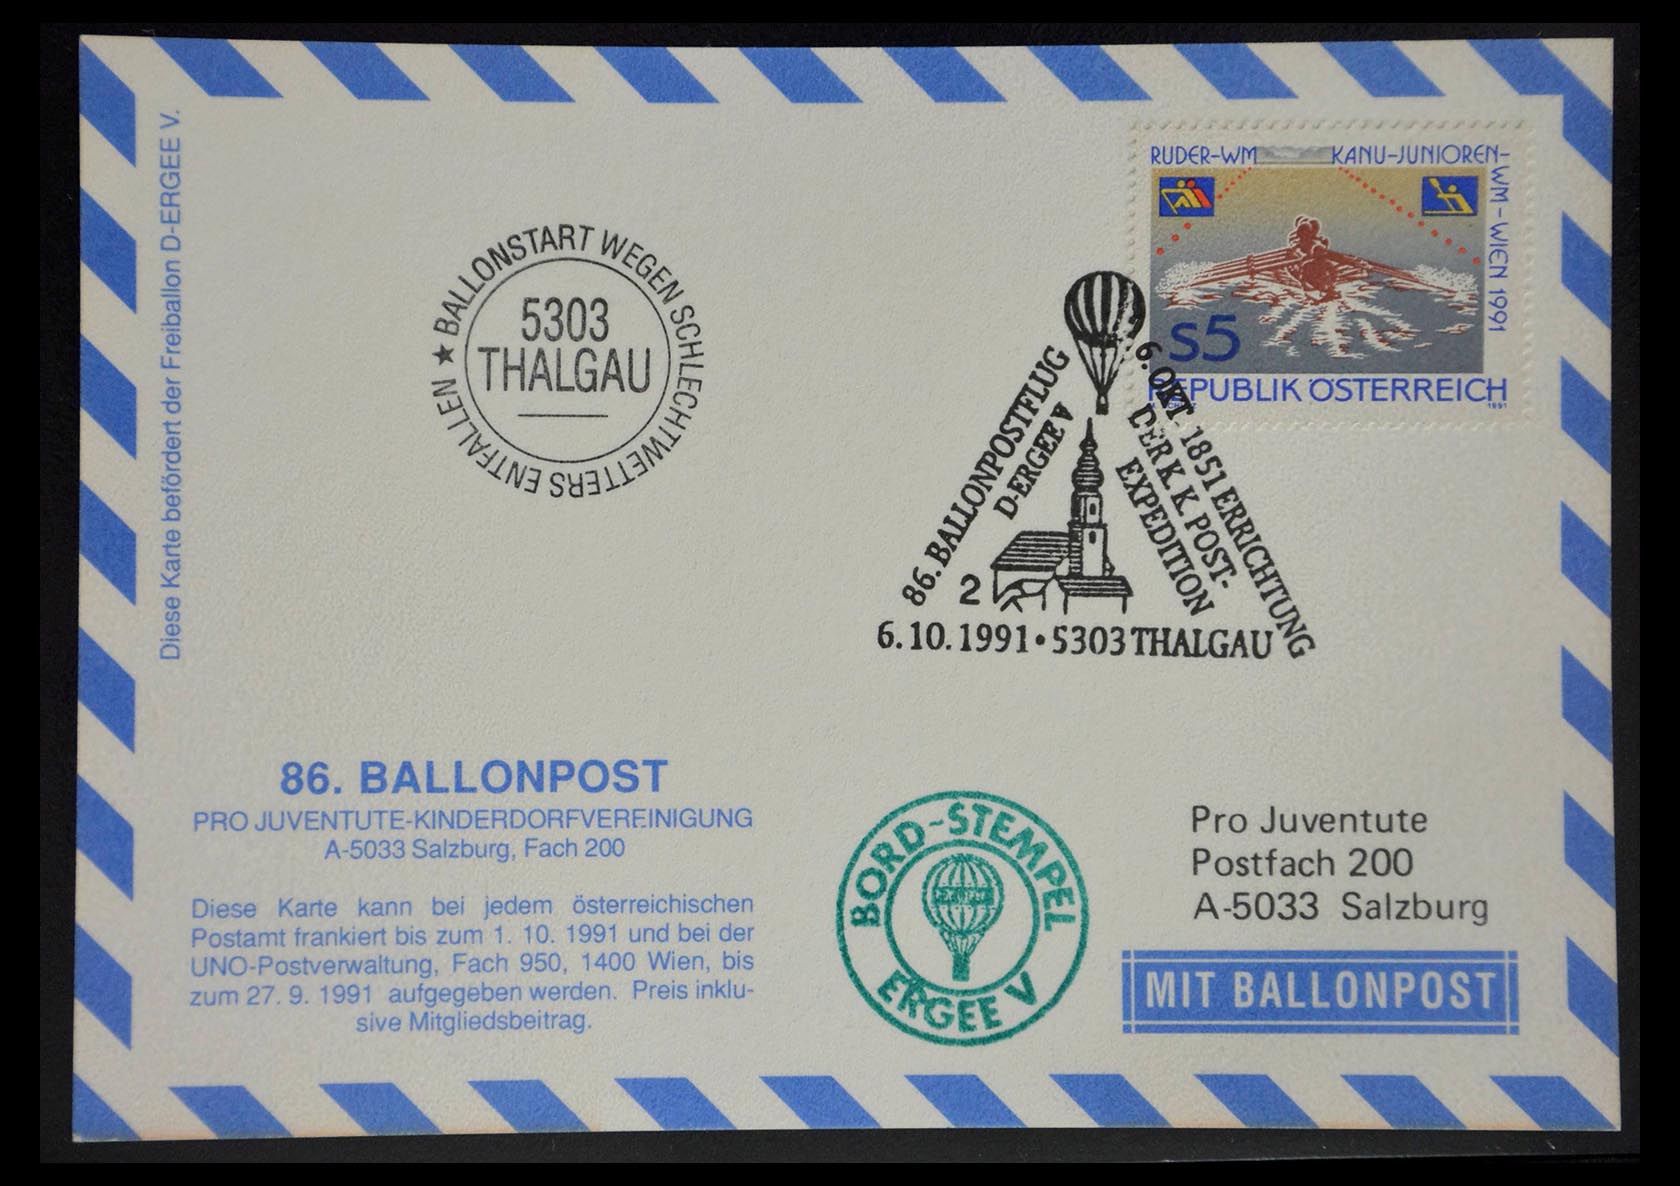 28889 043 - 28889 Balloon post 1927-2001.